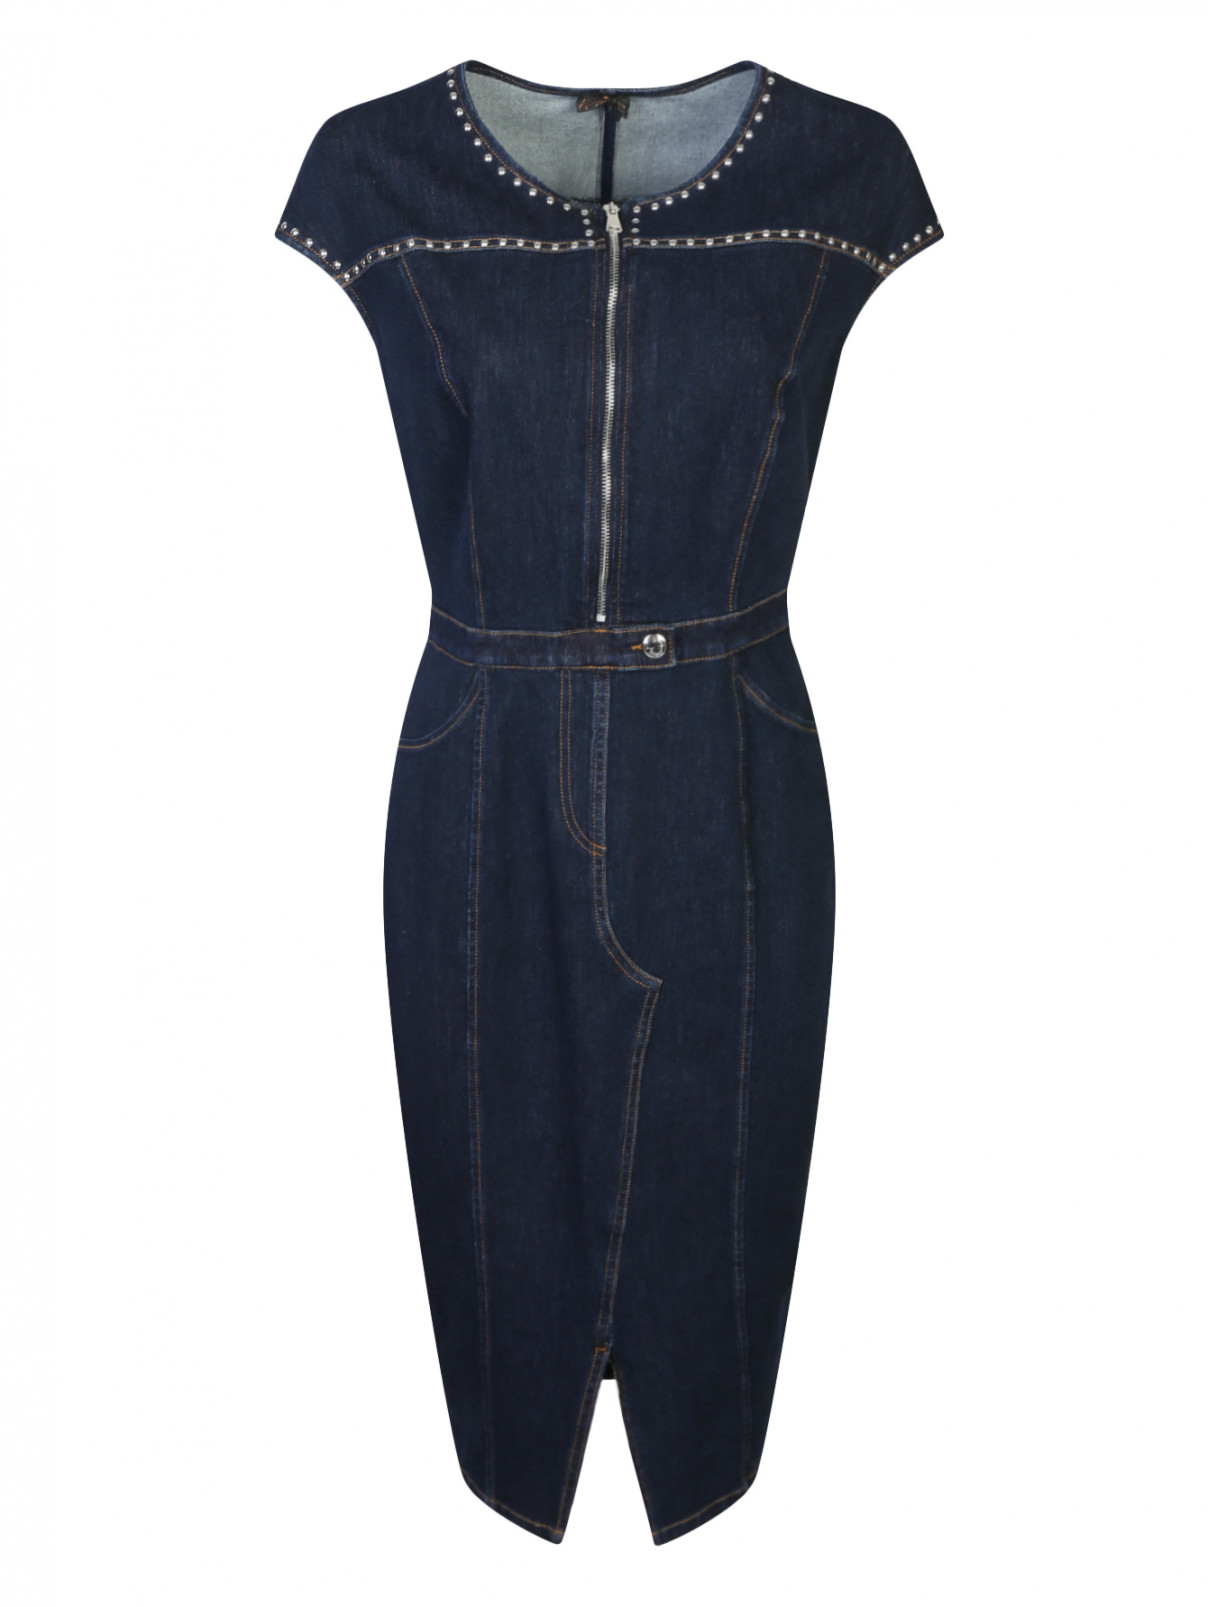 Джинсовое платье с металлической фурнитурой Marina Rinaldi  –  Общий вид  – Цвет:  Синий